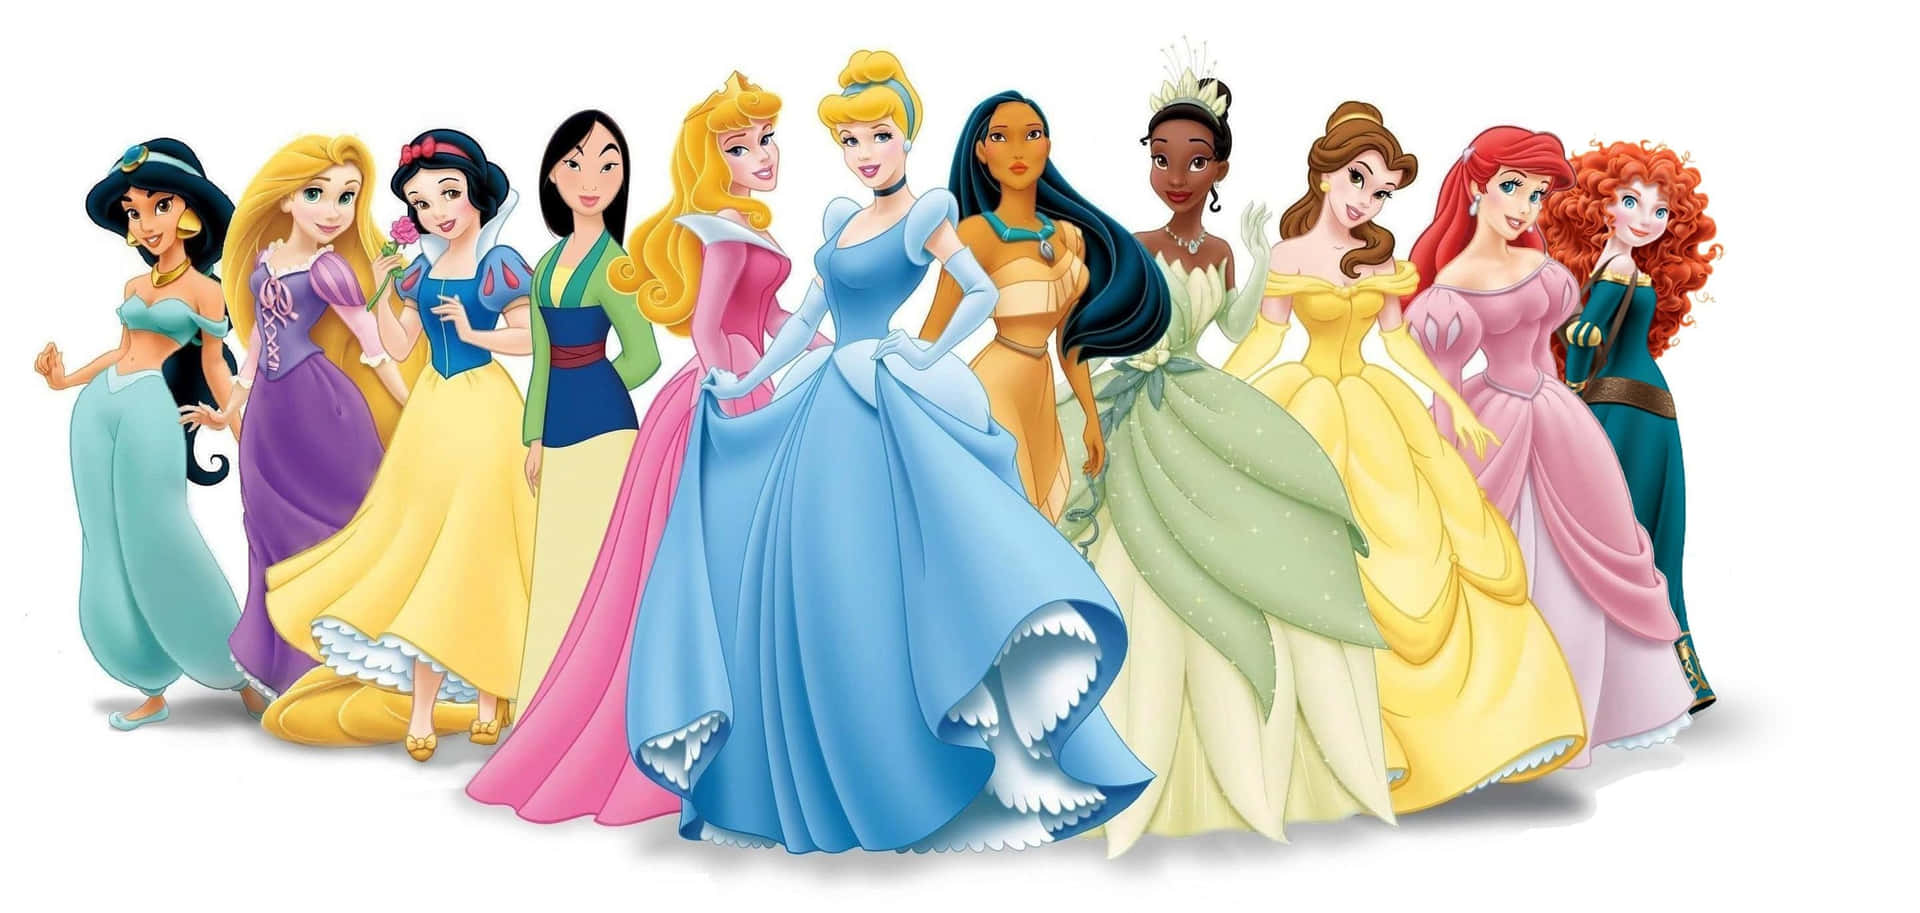 Imagende Los Vestidos De Las Princesas De Disney.